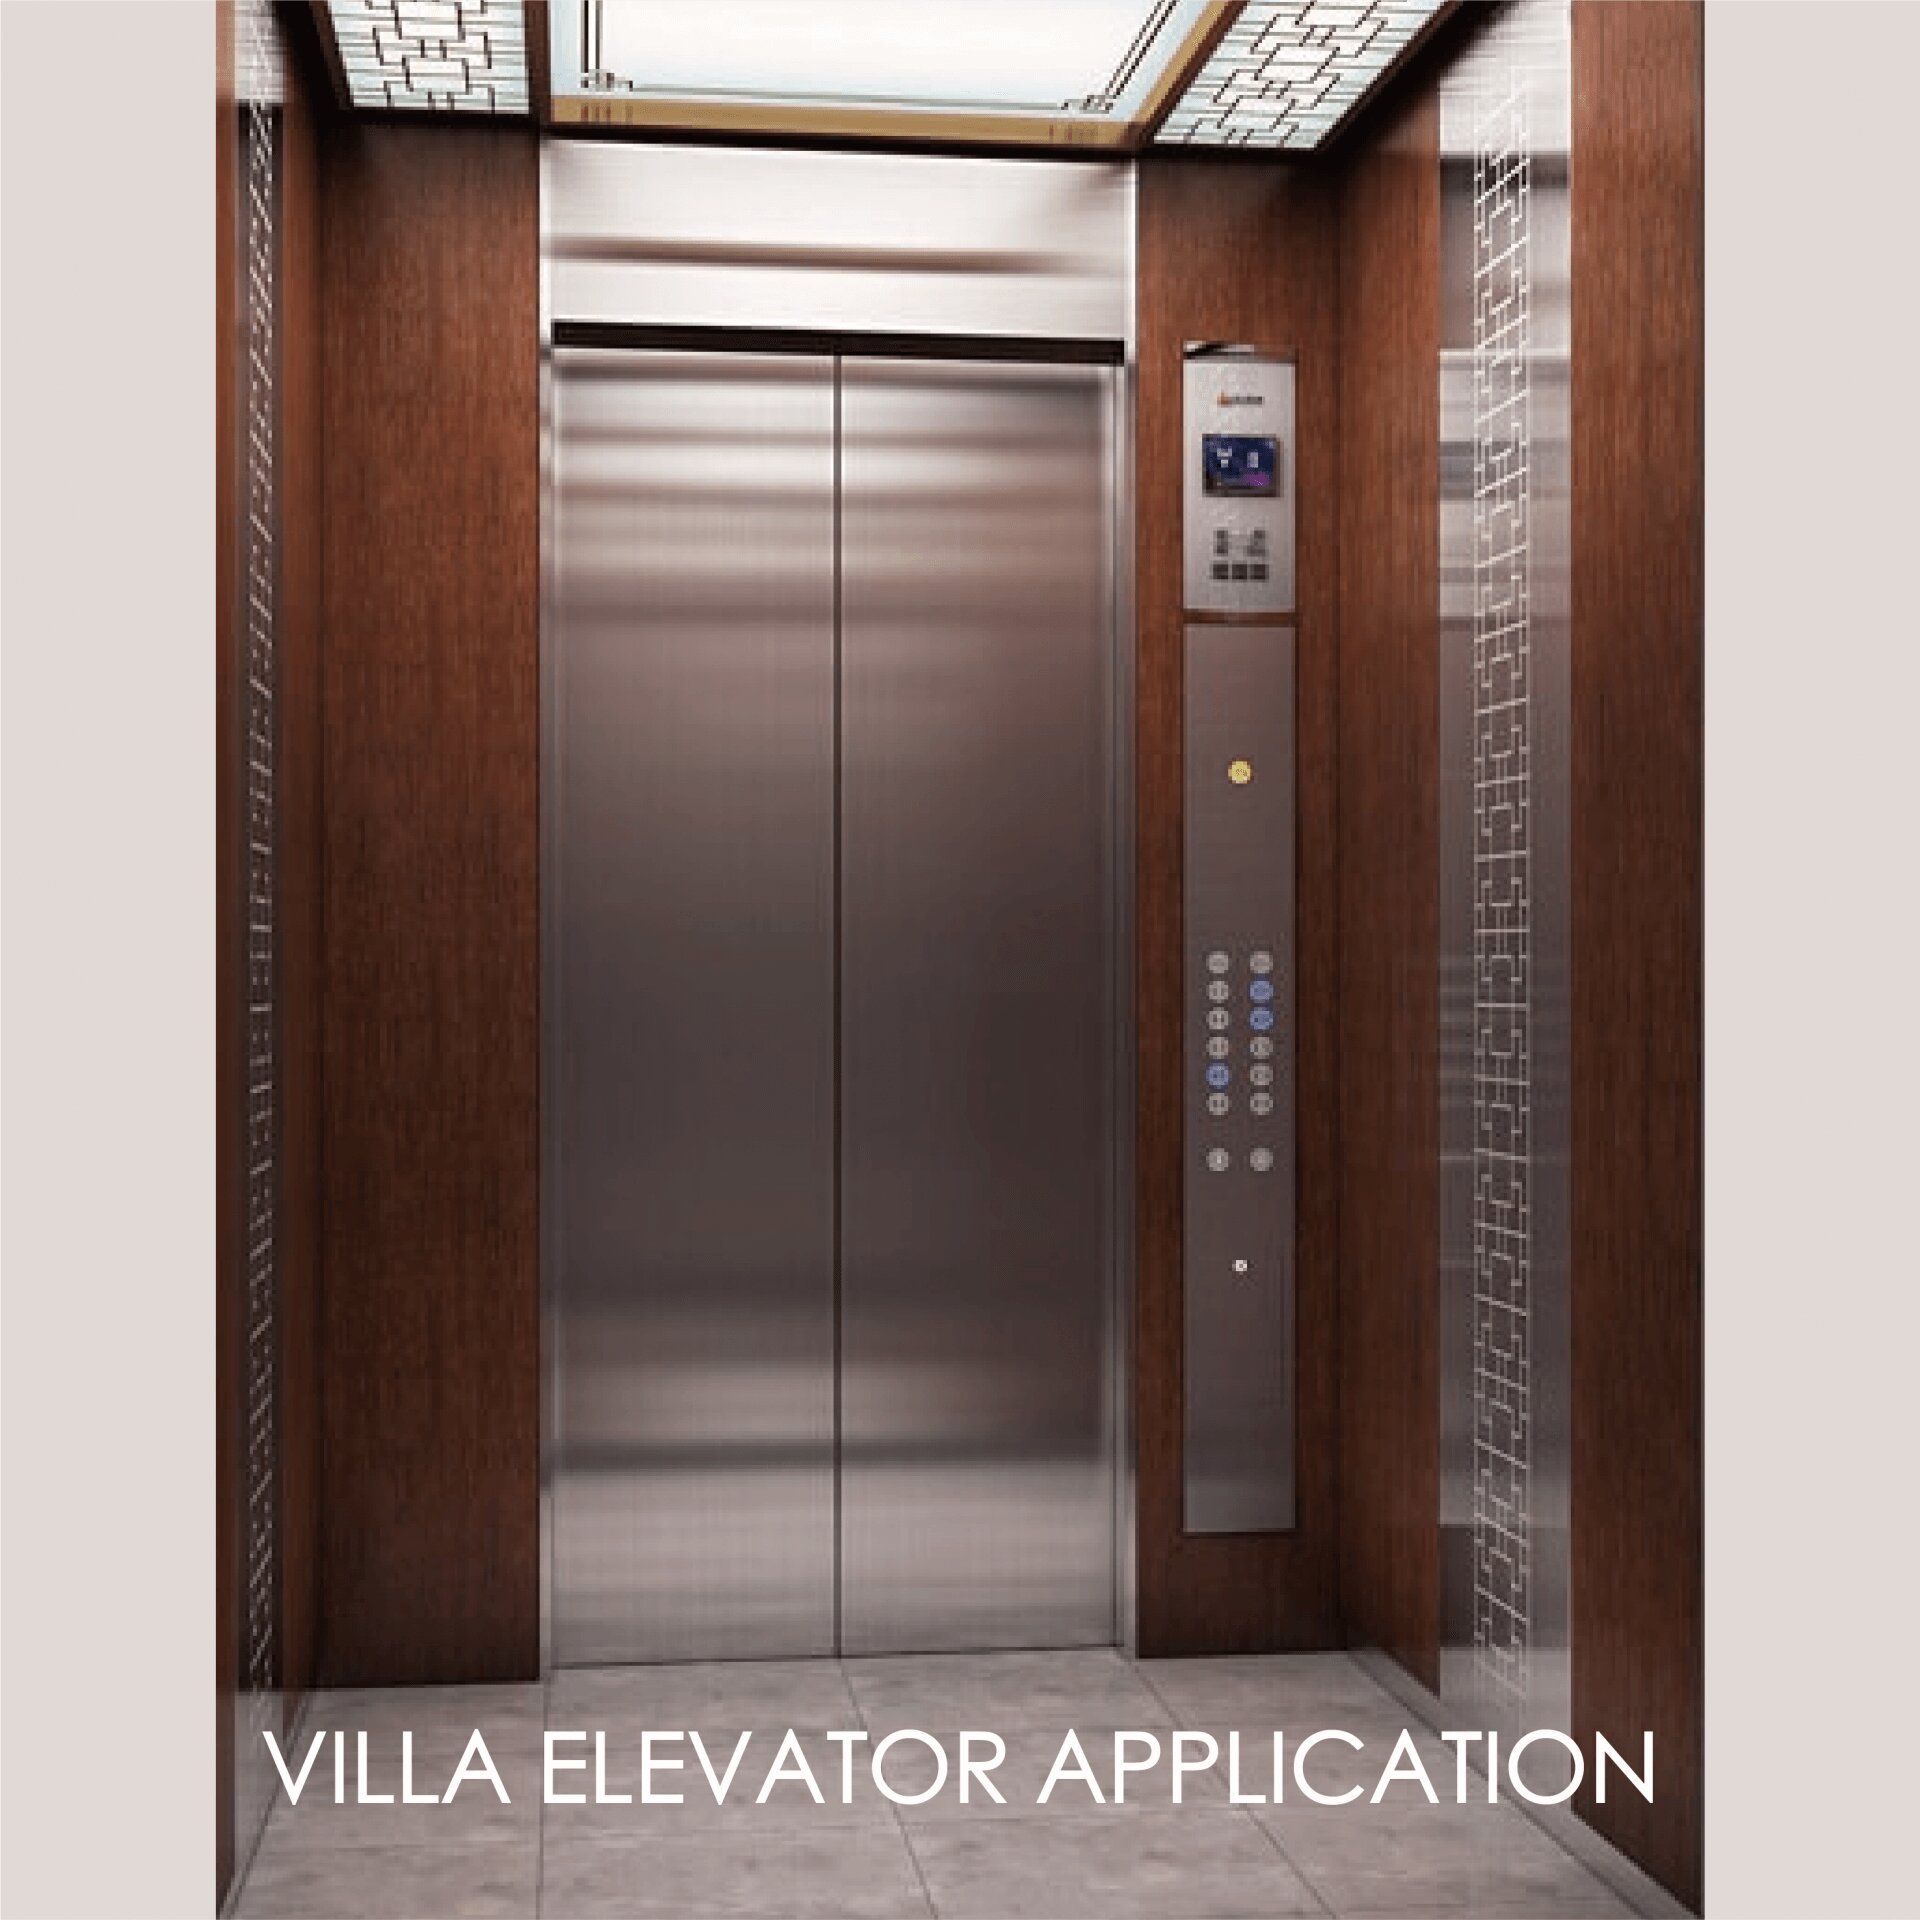 Використання ламінованого металу для прикраси панелі дверей та внутрішнього простору ліфта може створити естетику та довговічність.